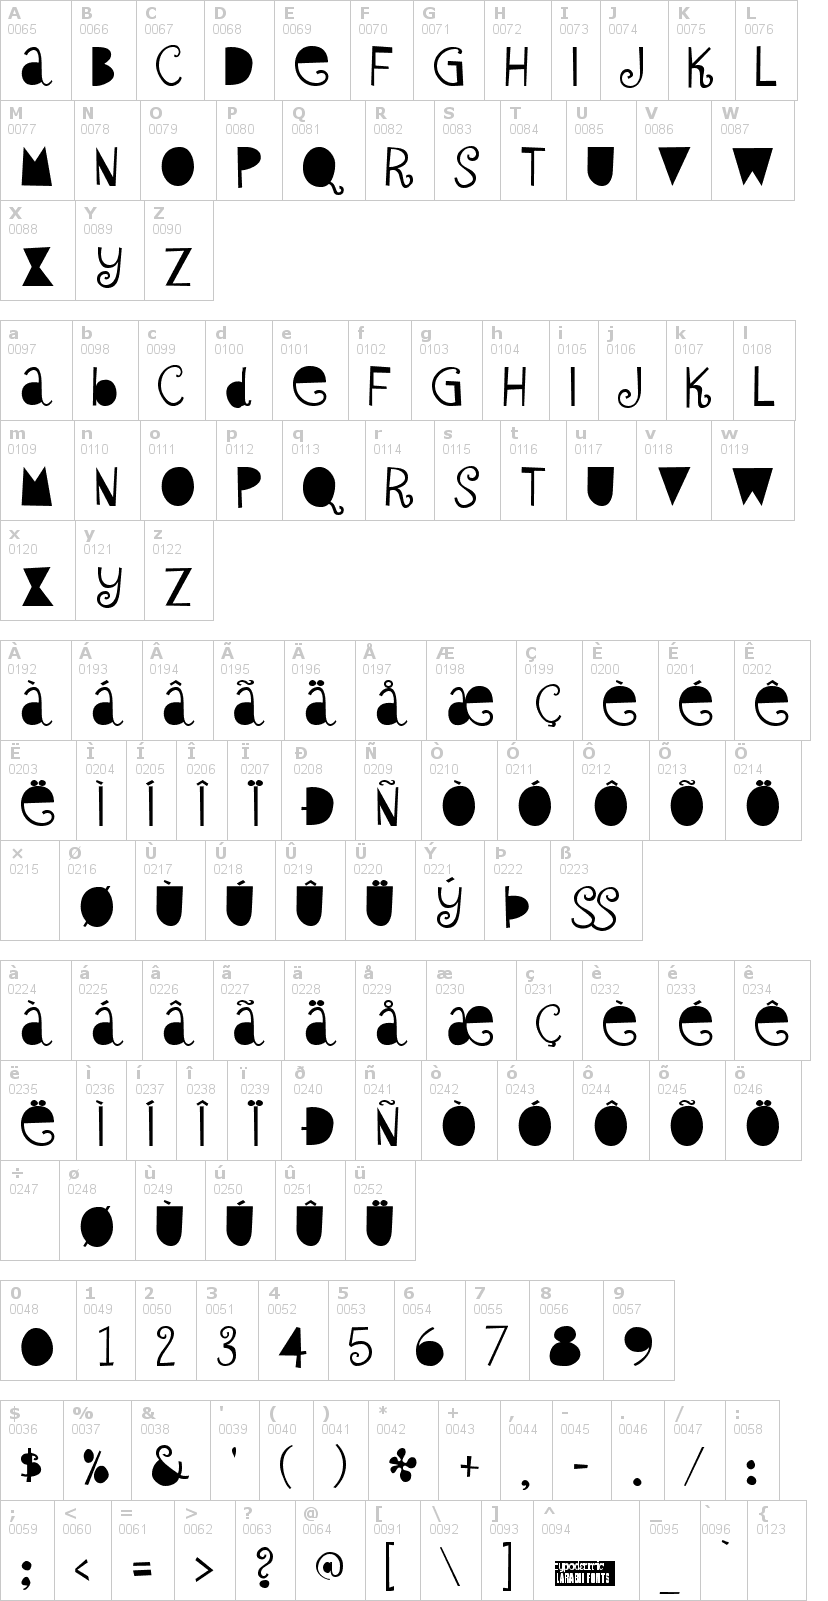 Lettere dell'alfabeto del font sybil-green con le quali è possibile realizzare adesivi prespaziati